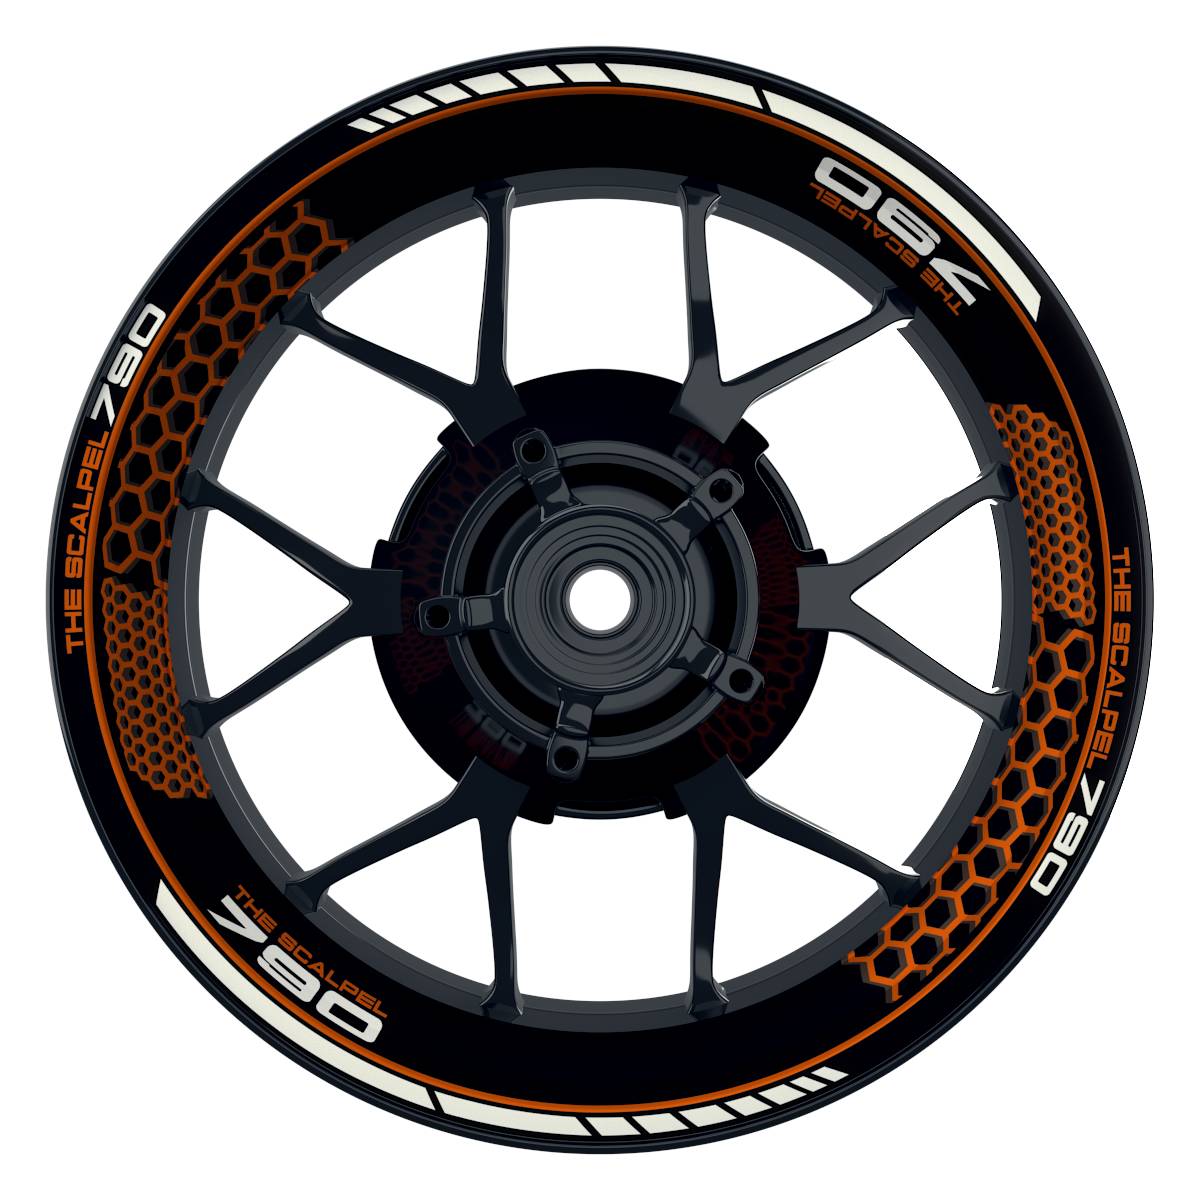 THE SCALPEL 790 Hexagon schwarz orange Wheelsticker Felgenaufkleber